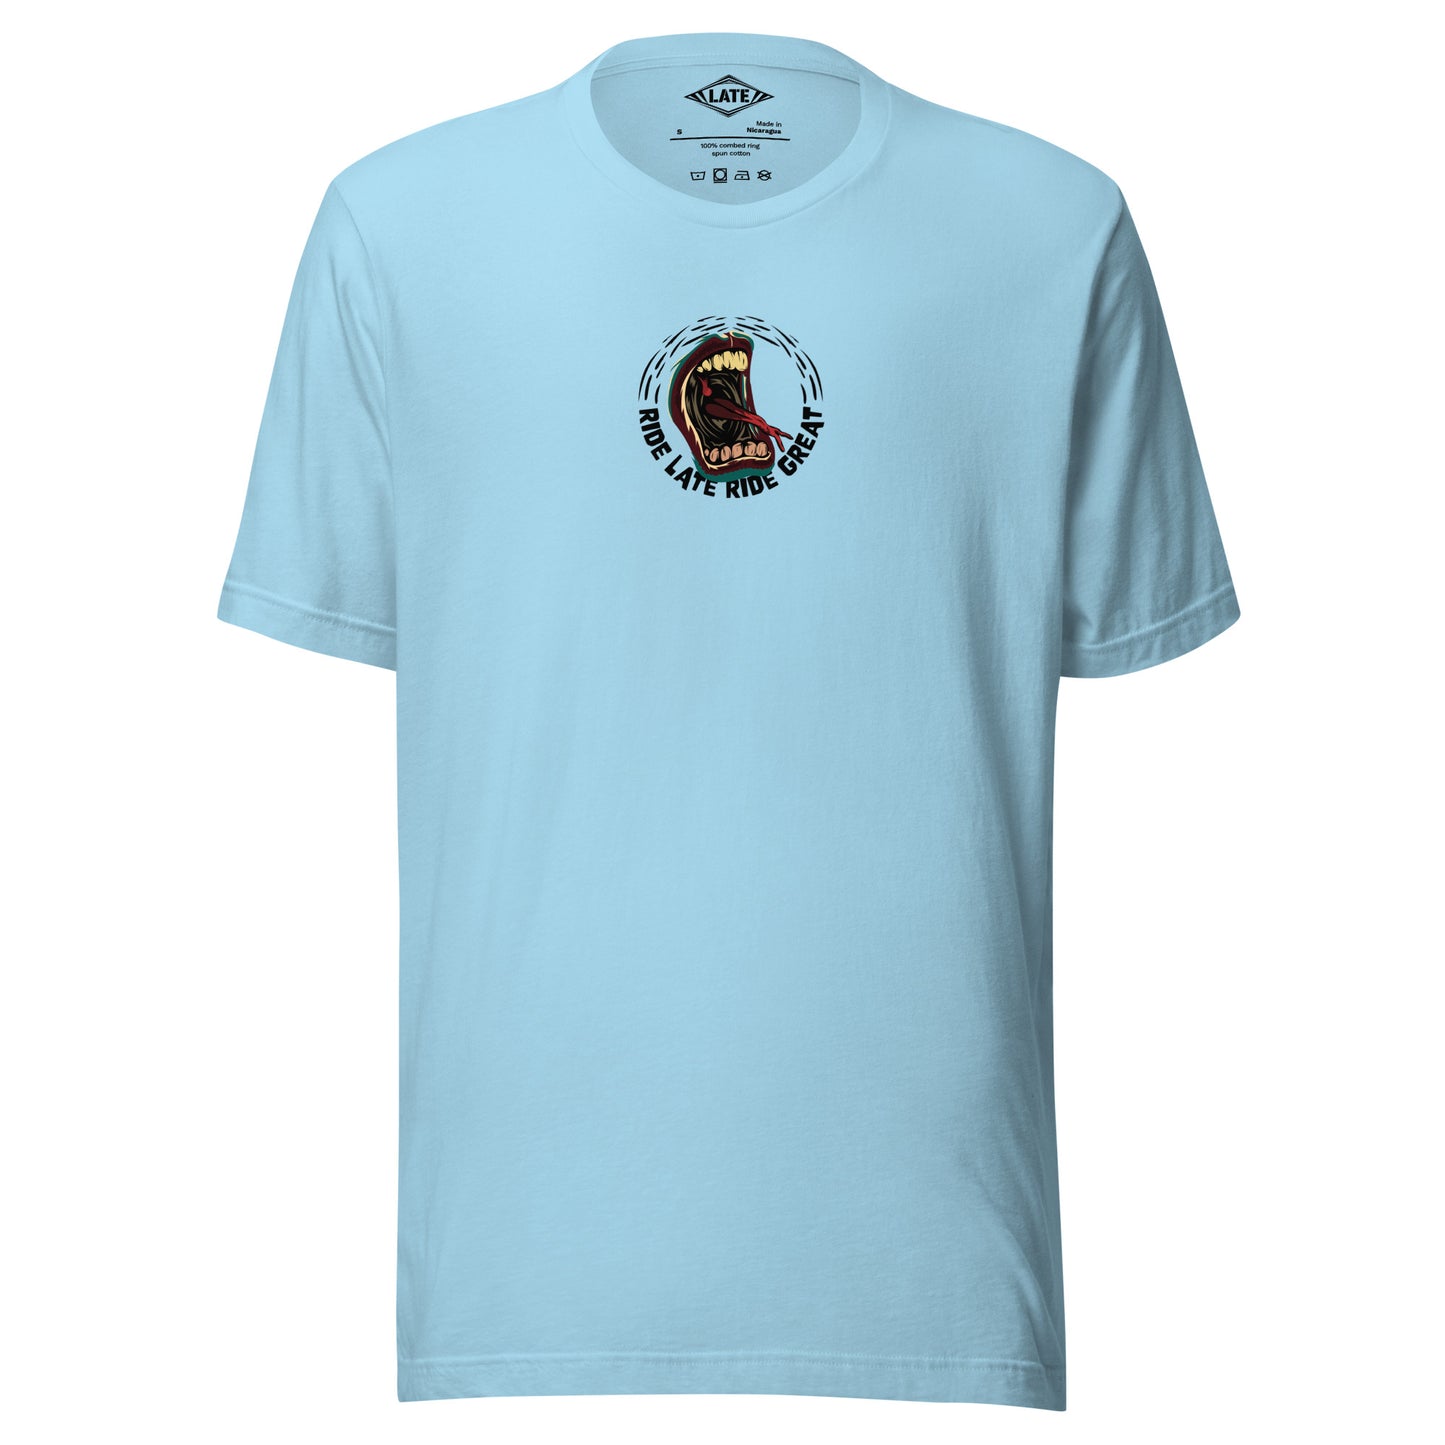 T-Shirt Ride Late Live Great skate style volcom avec un design de bouche qui tire la langue couleur du t-shirt unisex bleu océan